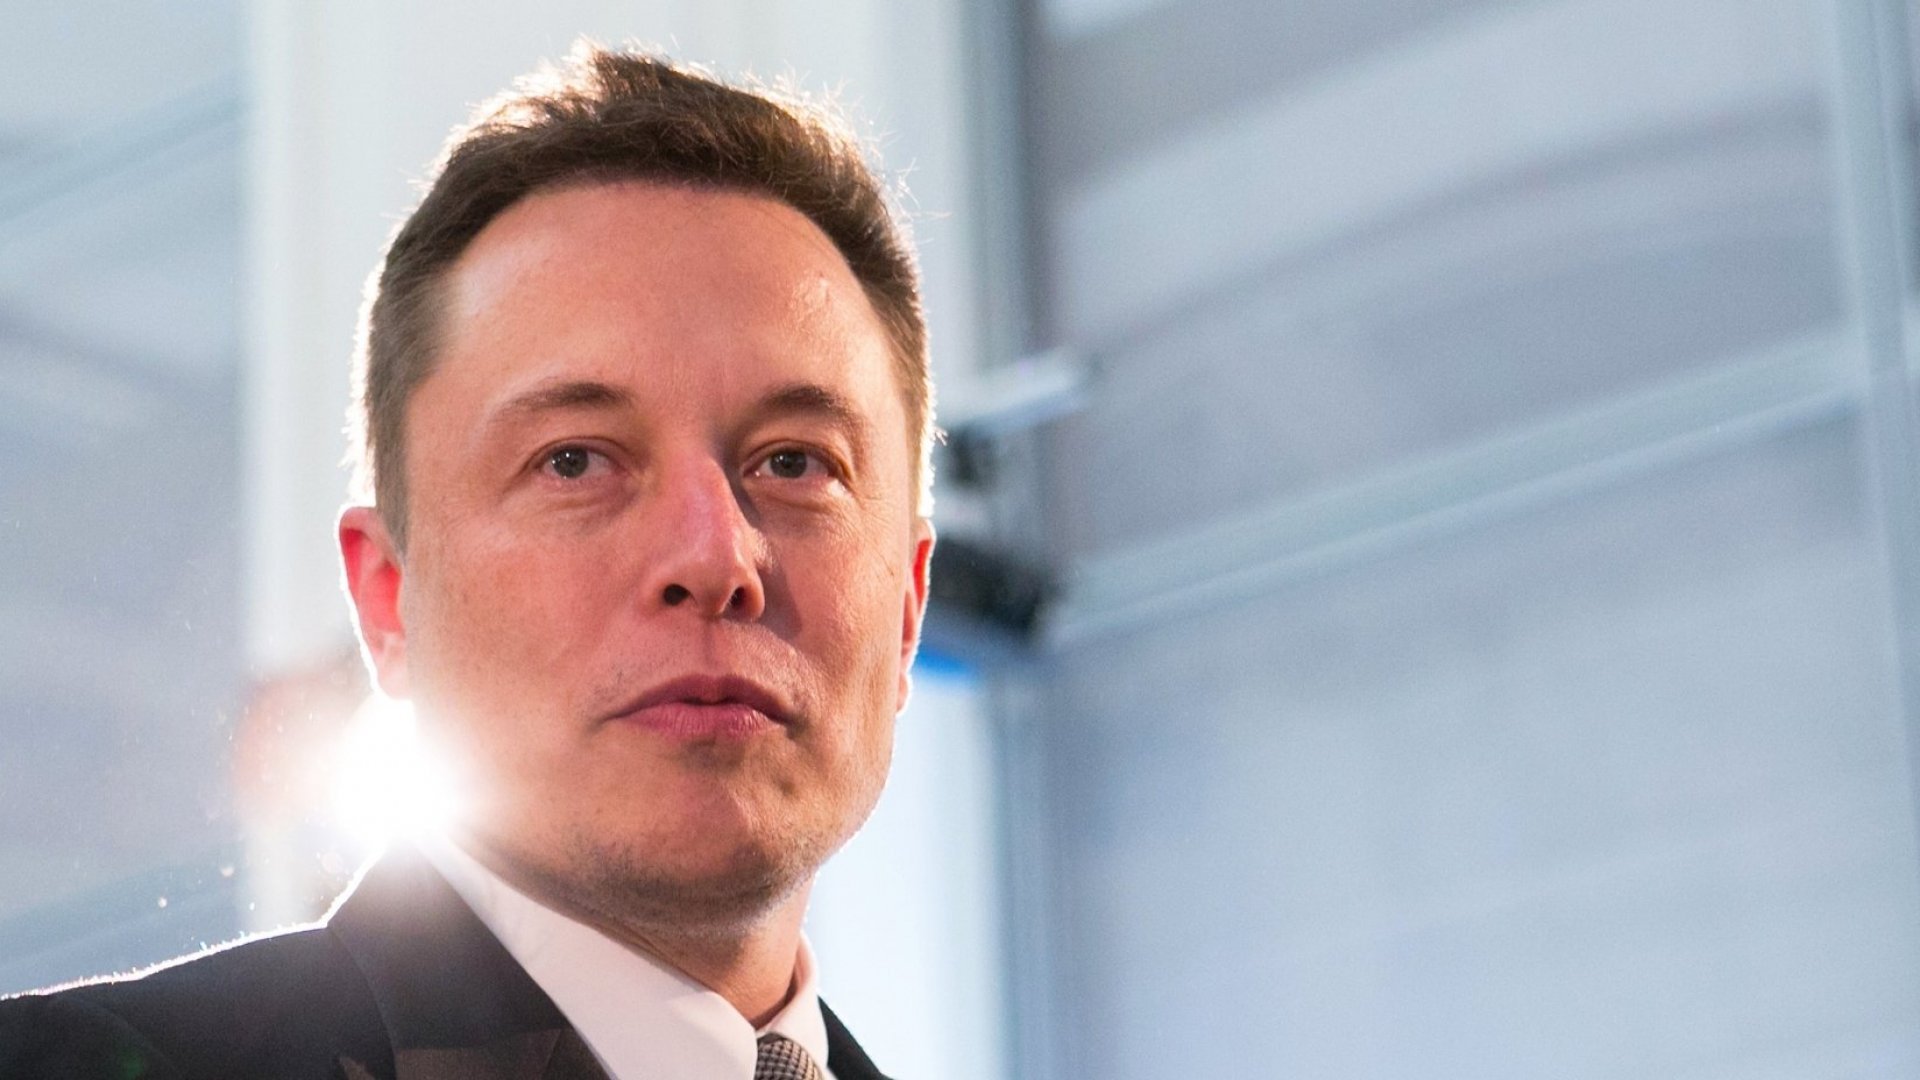 Întrebarea pe care Elon Musk o pune la fiecare interviu pentru a descoperi angajații mincinoși